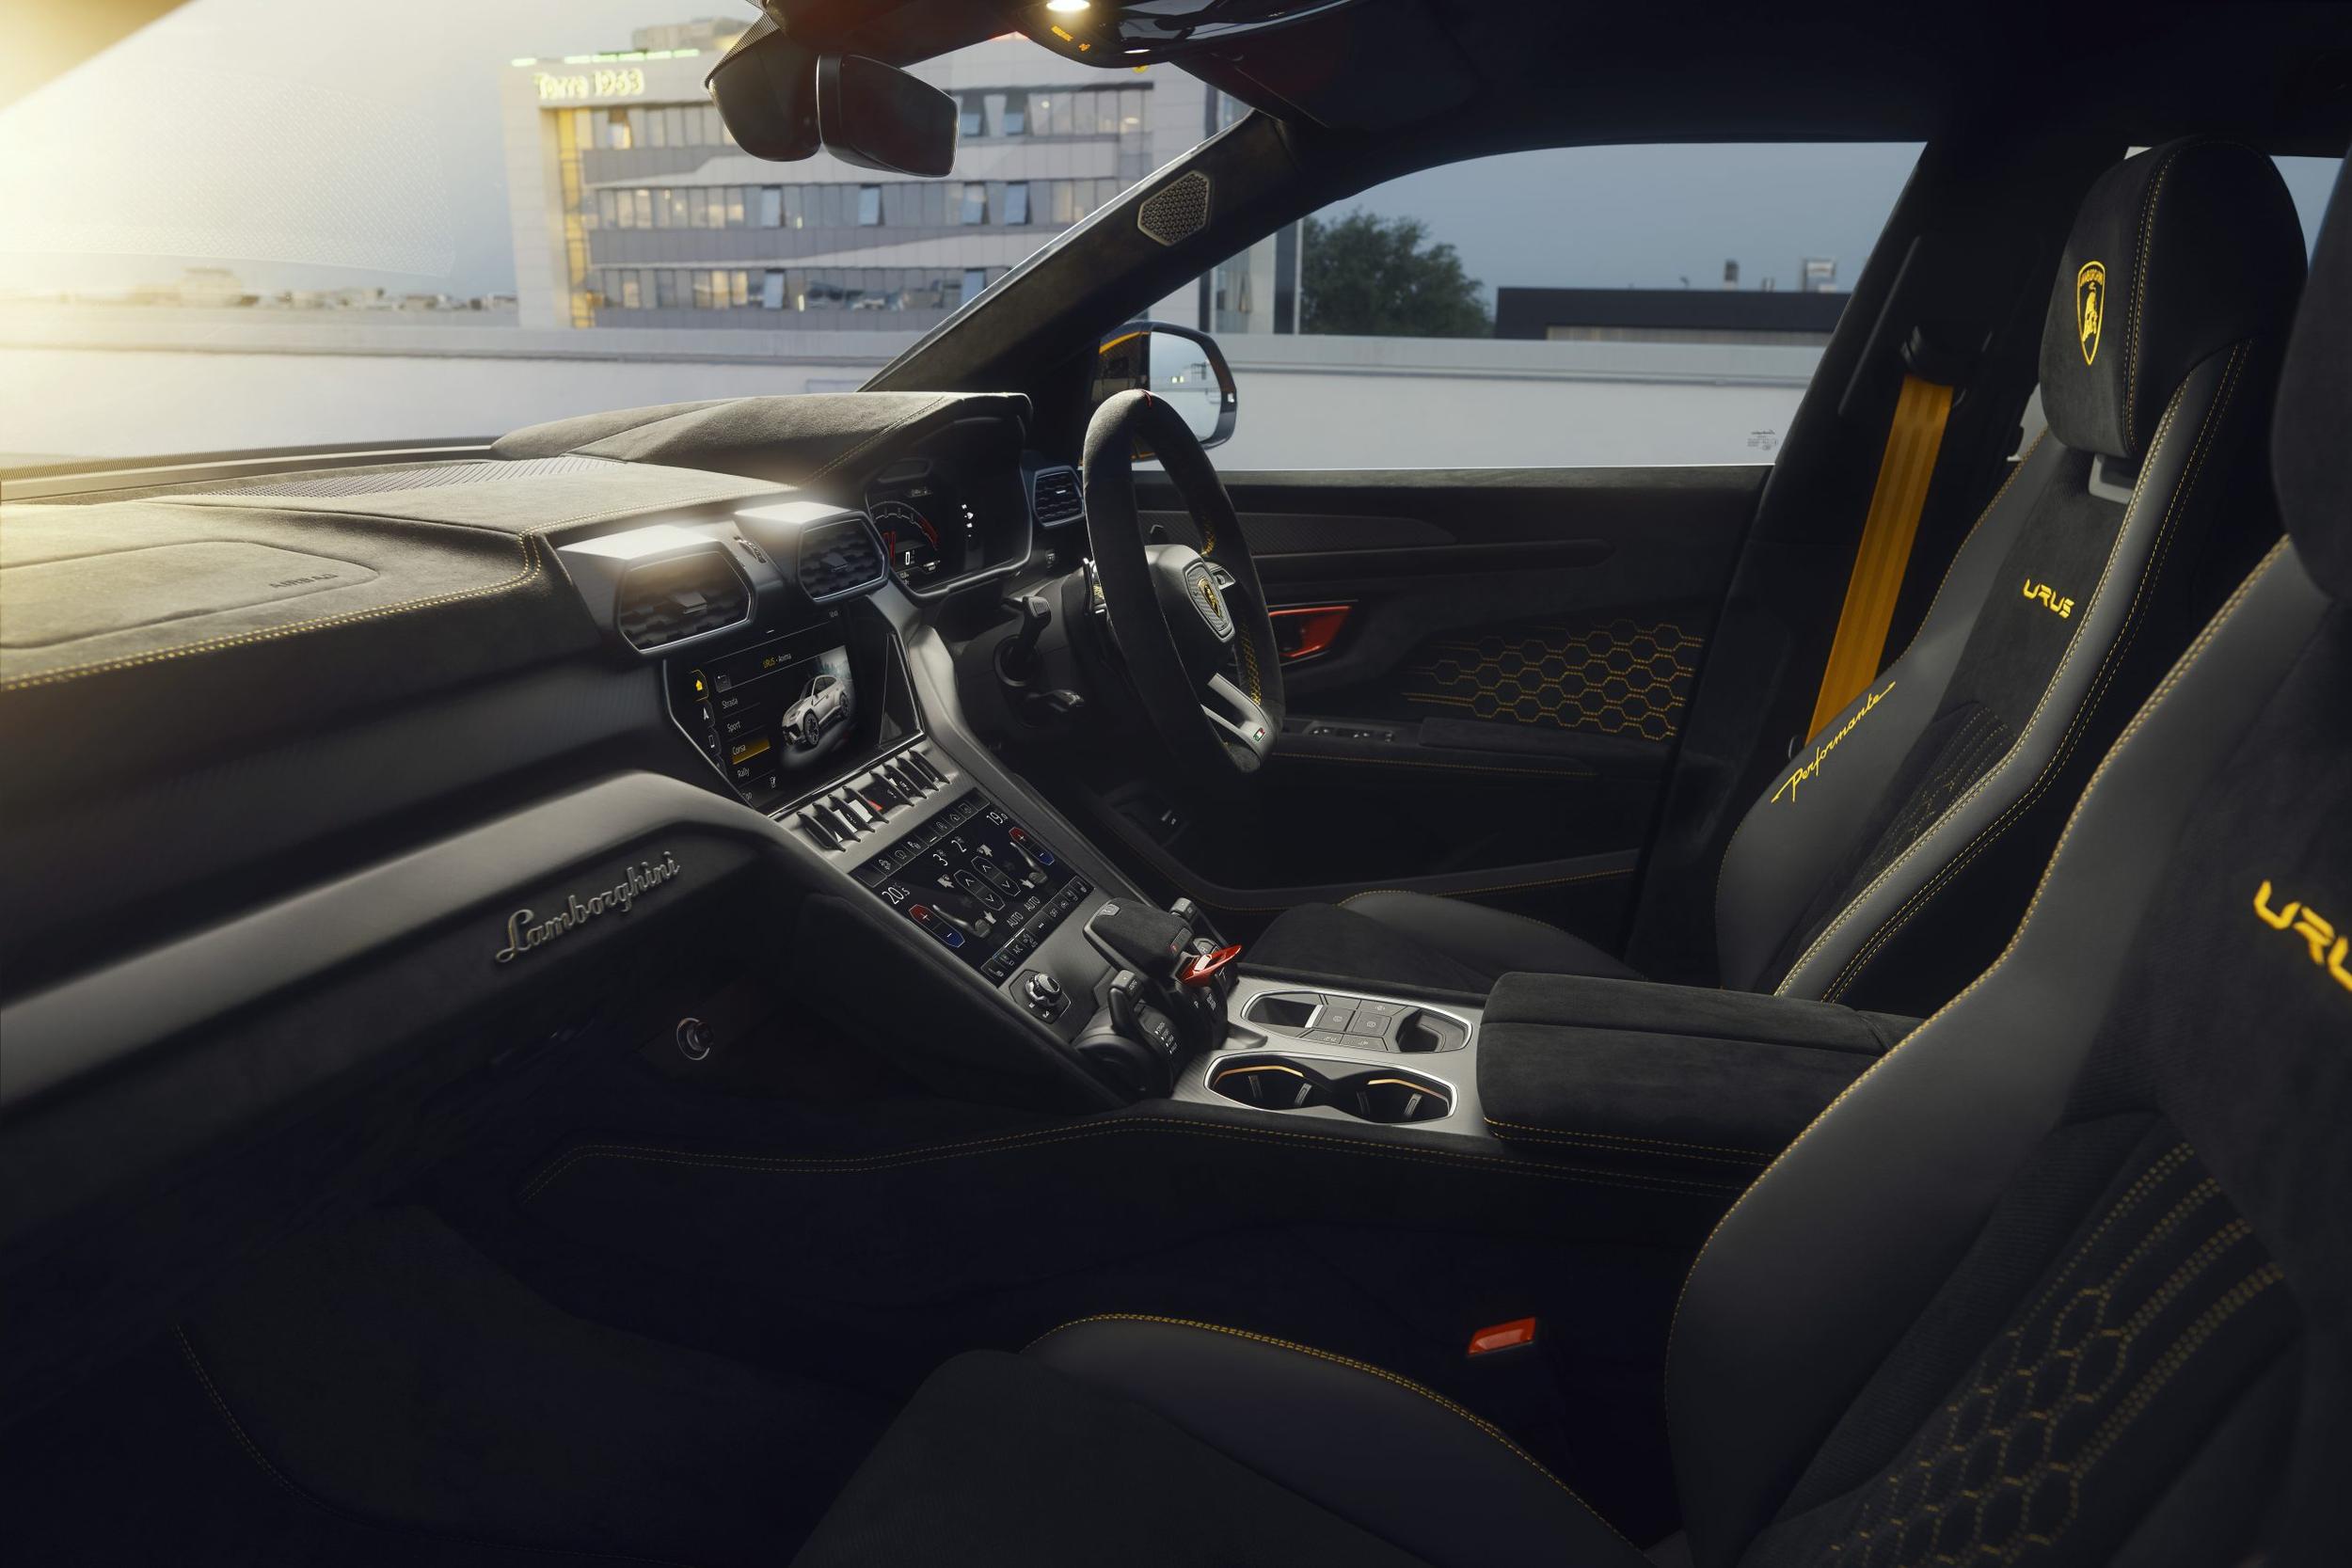 Lamborghini Urus S price, performance, exterior, interior, rivals